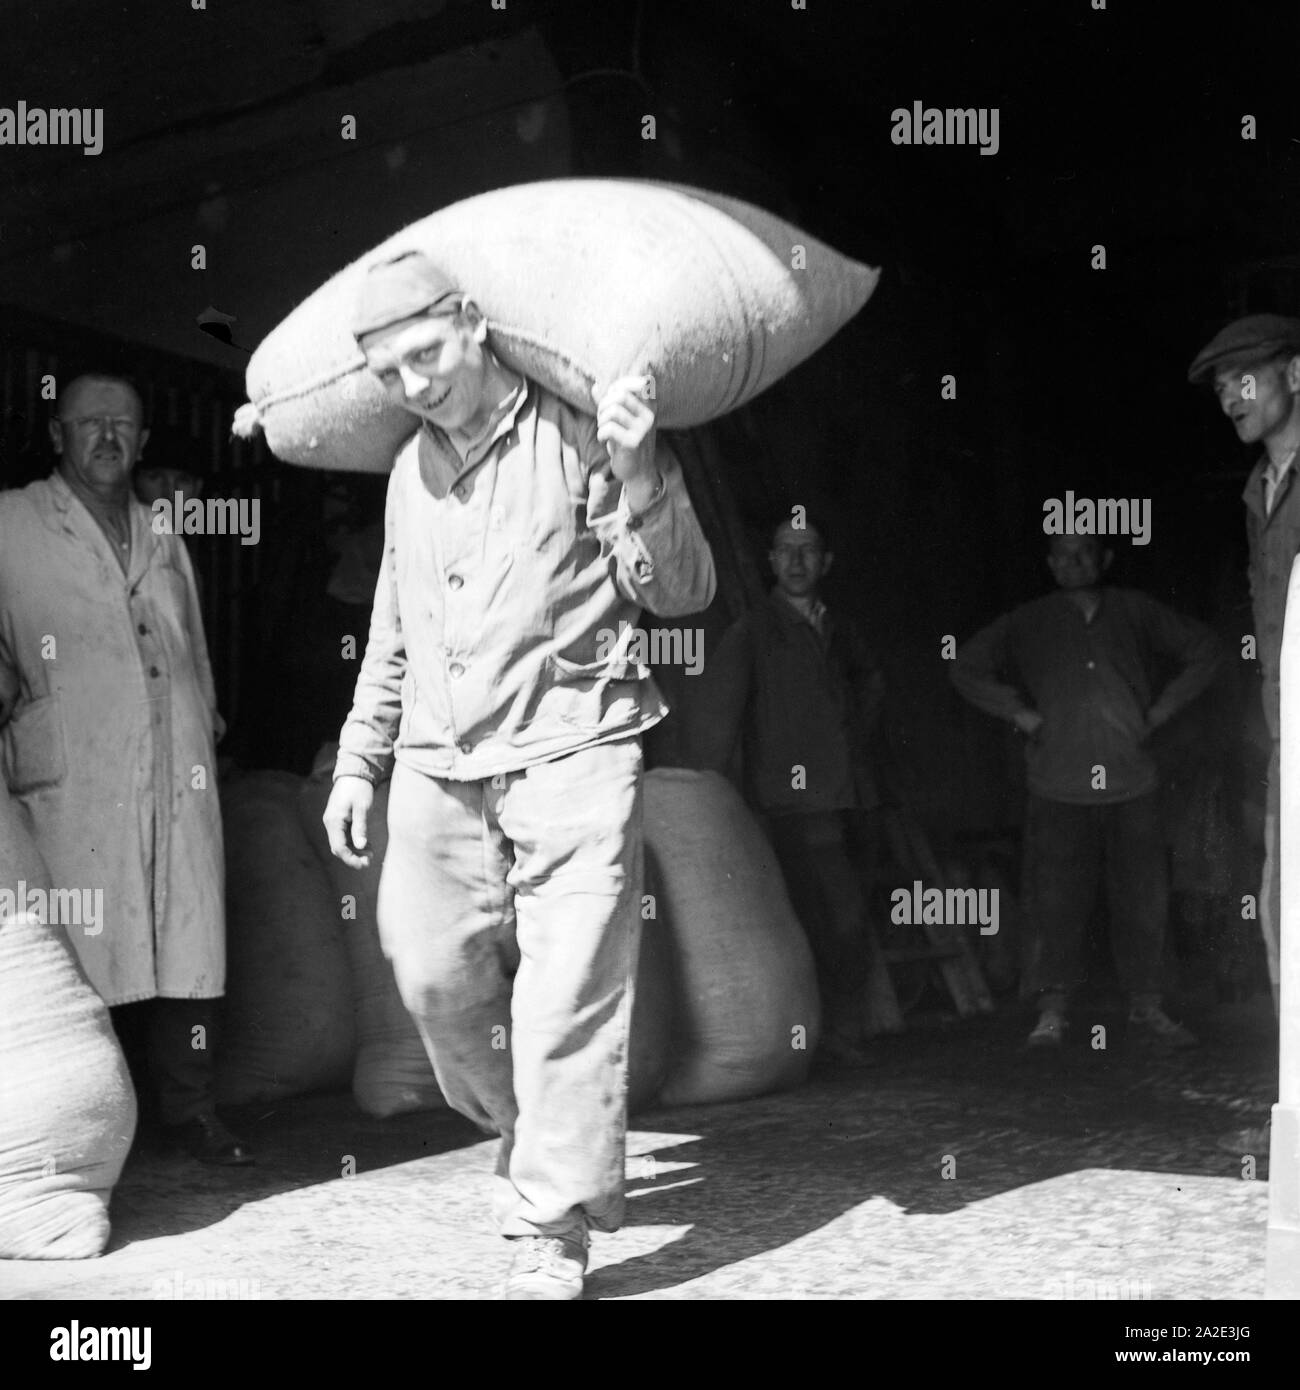 Ein Lagerarbeiter schleppt einen Sack aus dem Lagerhaus, seine Kollegen schauen zu, Deutschland 1930er Jahre. A warehouseman carrying a sack out iof a warehouse while his colleagues laugh and comment, Germany 1930s. Stock Photo